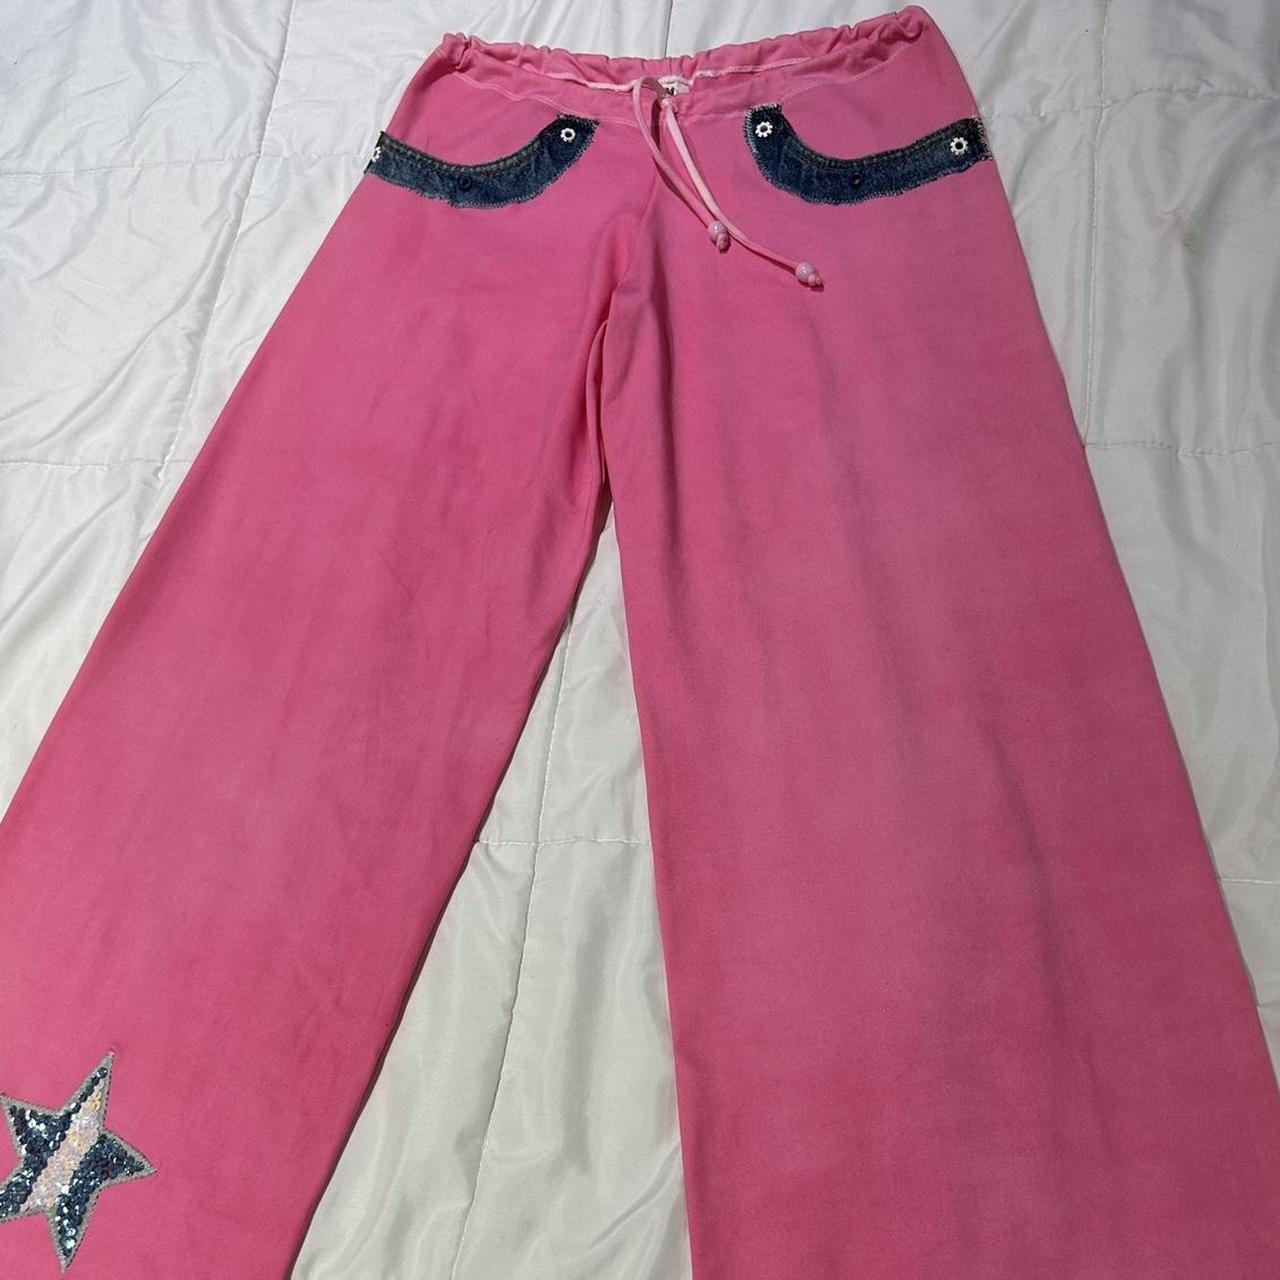 Vintage 2000s hot pink yoga pants w/ denim details - Depop